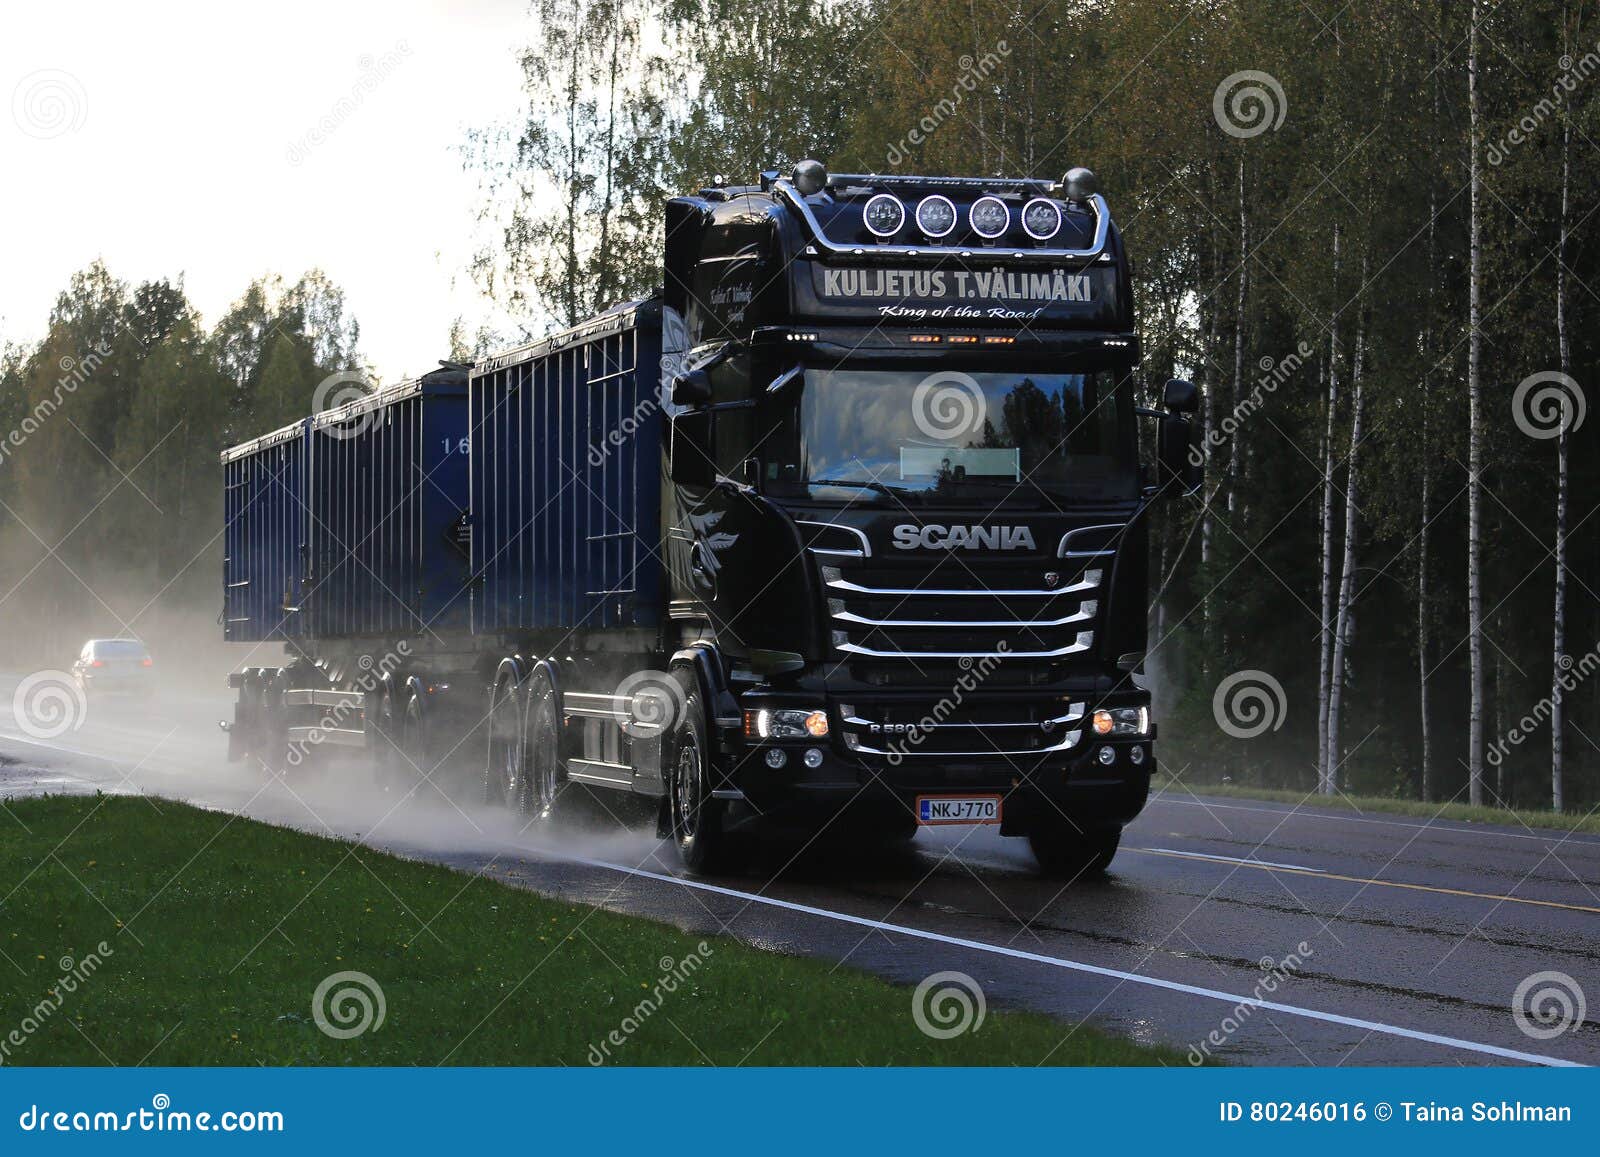 https://thumbs.dreamstime.com/z/scania-v-trucking-rainy-road-petajavesi-finland-september-r-trailer-truck-kuljetus-t-valimaki-moves-along-wet-rain-80246016.jpg